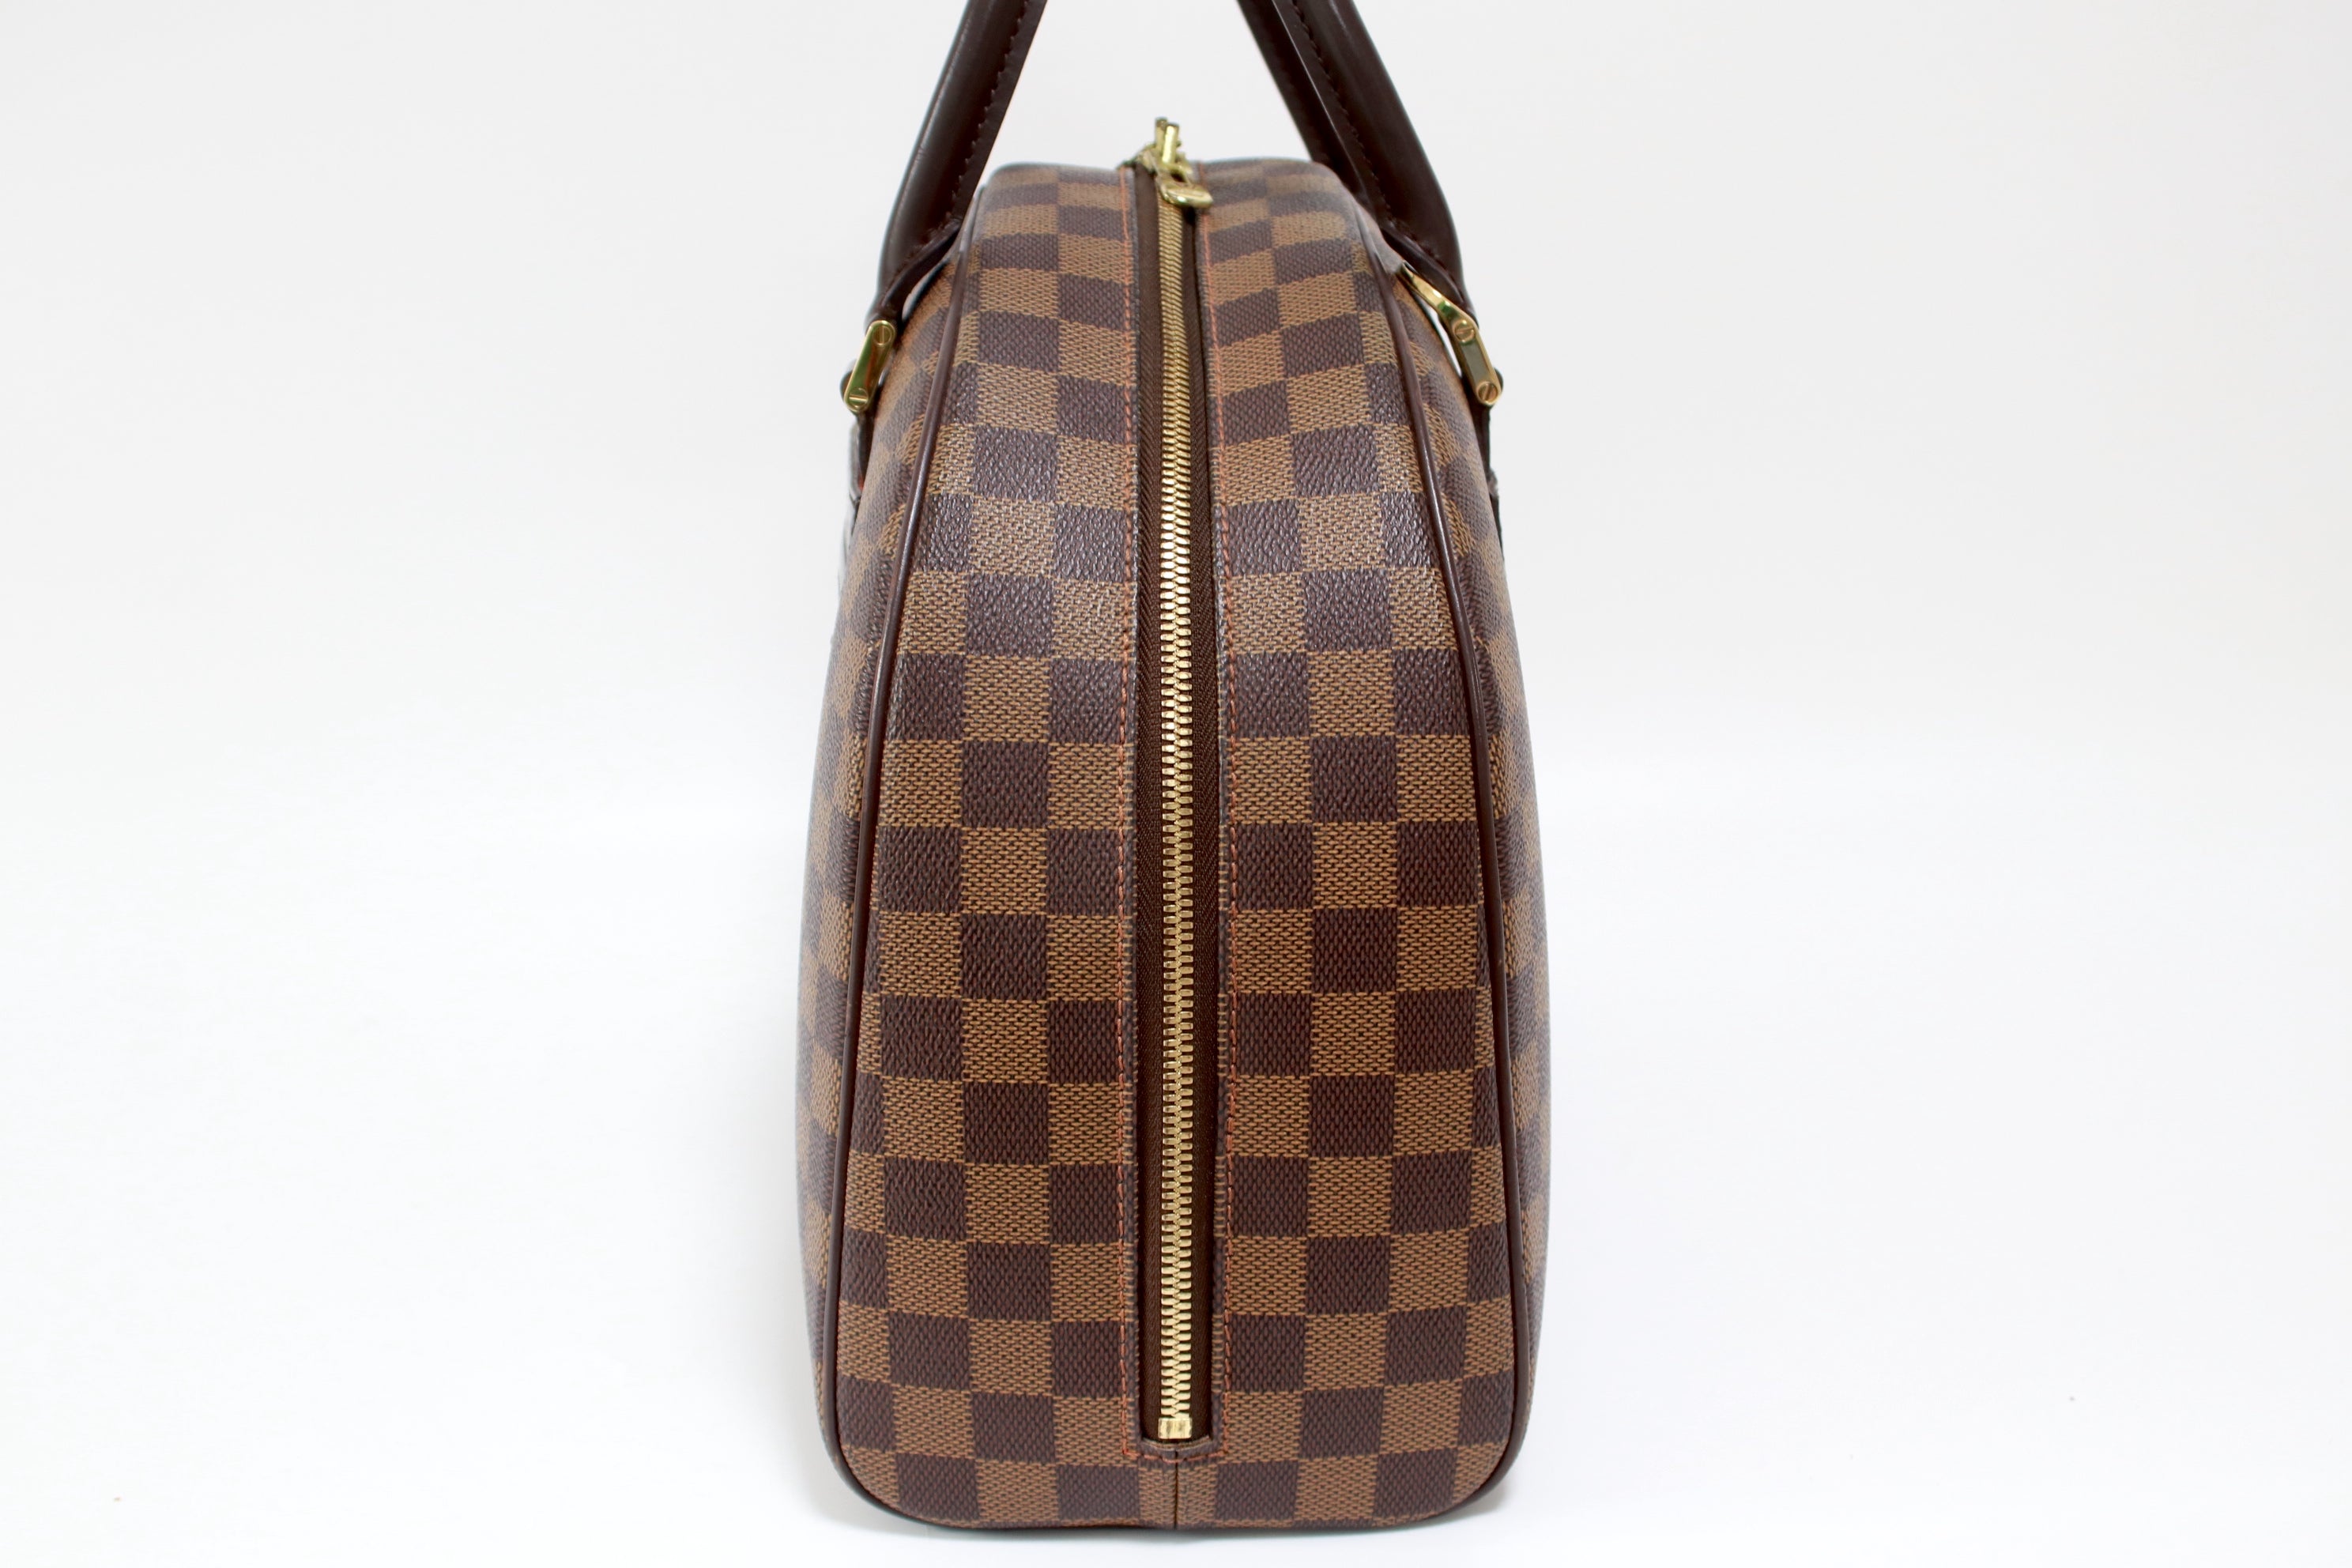 Louis Vuitton Nolita Damier Ebene Handbag Used (6804)